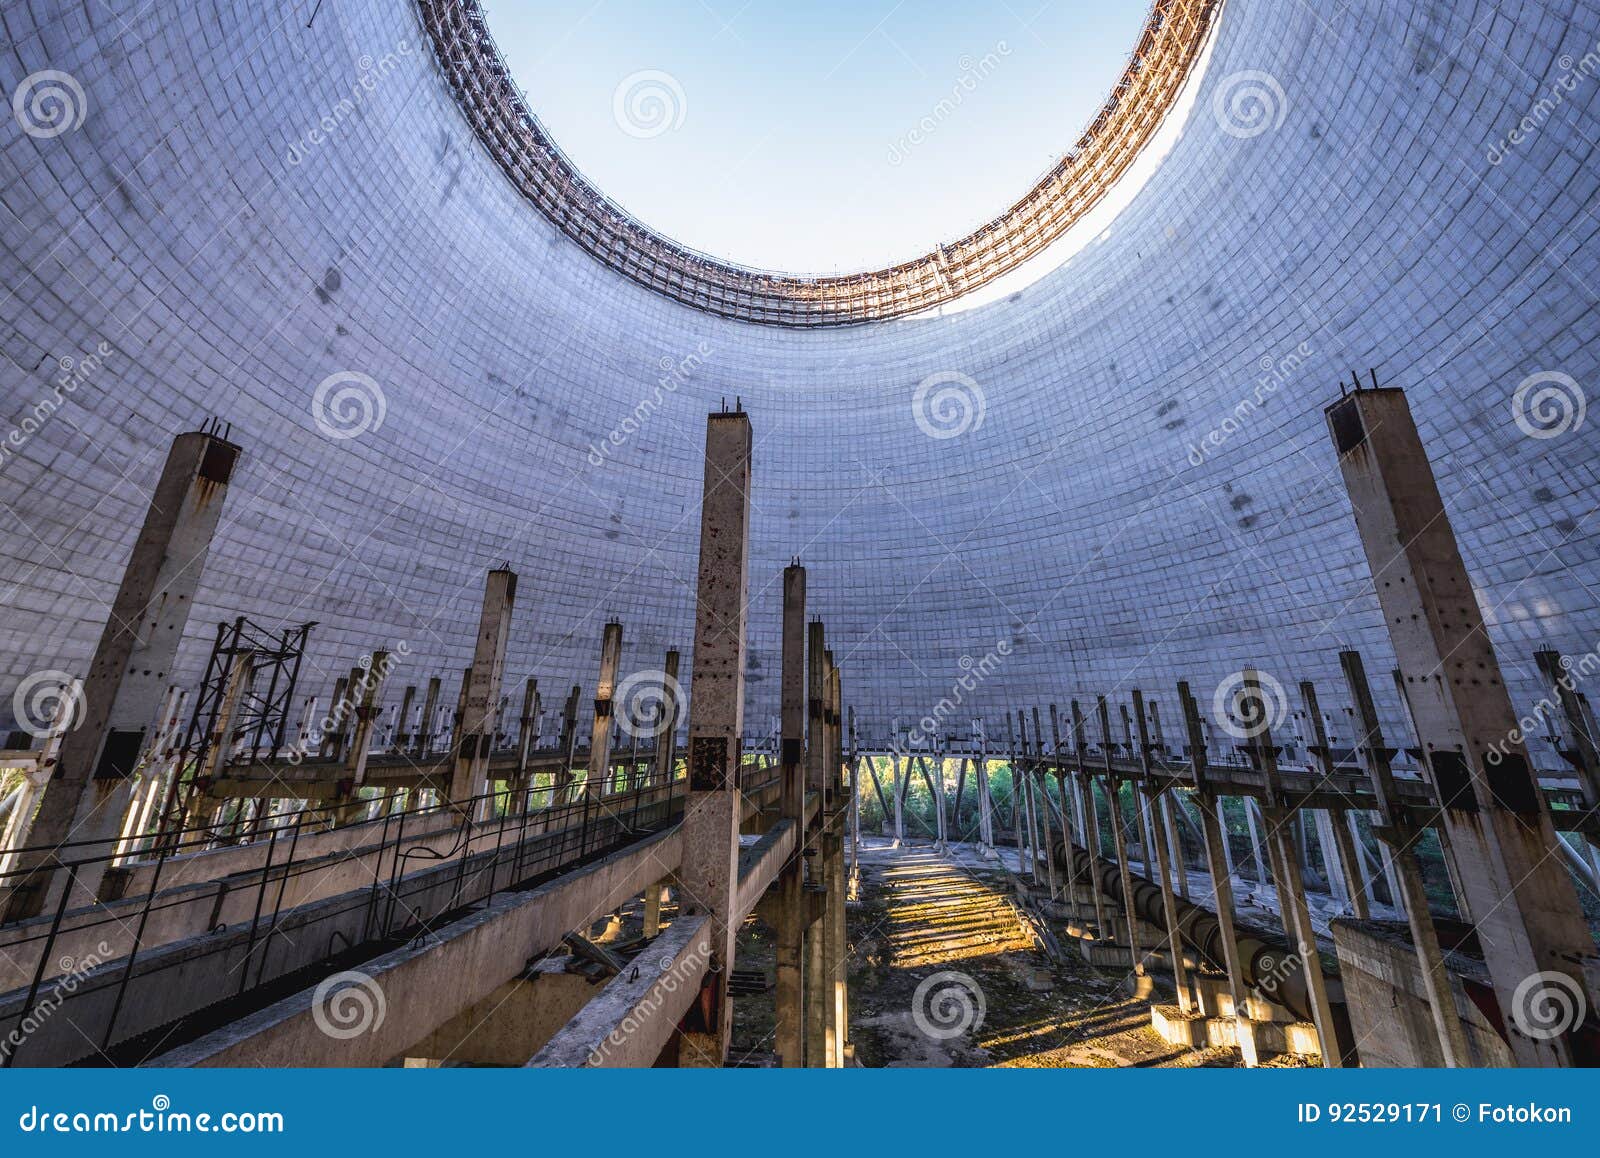 chernobyl power plant